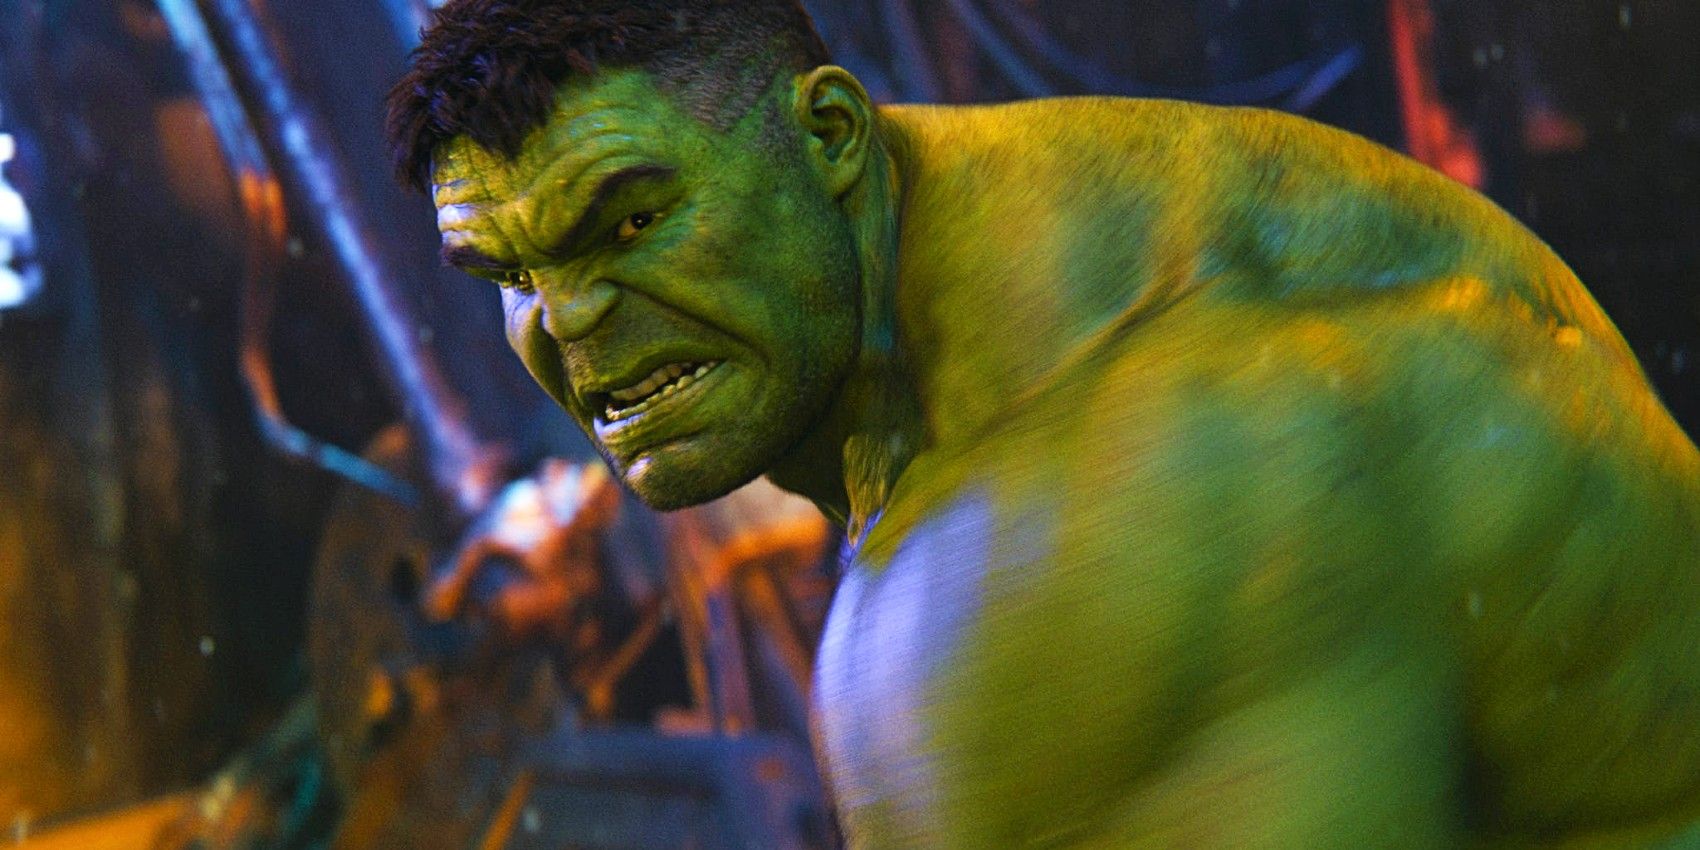 Los hermanos Russo responden a la pregunta de los vengadores más fuertes trolleando a Hulk